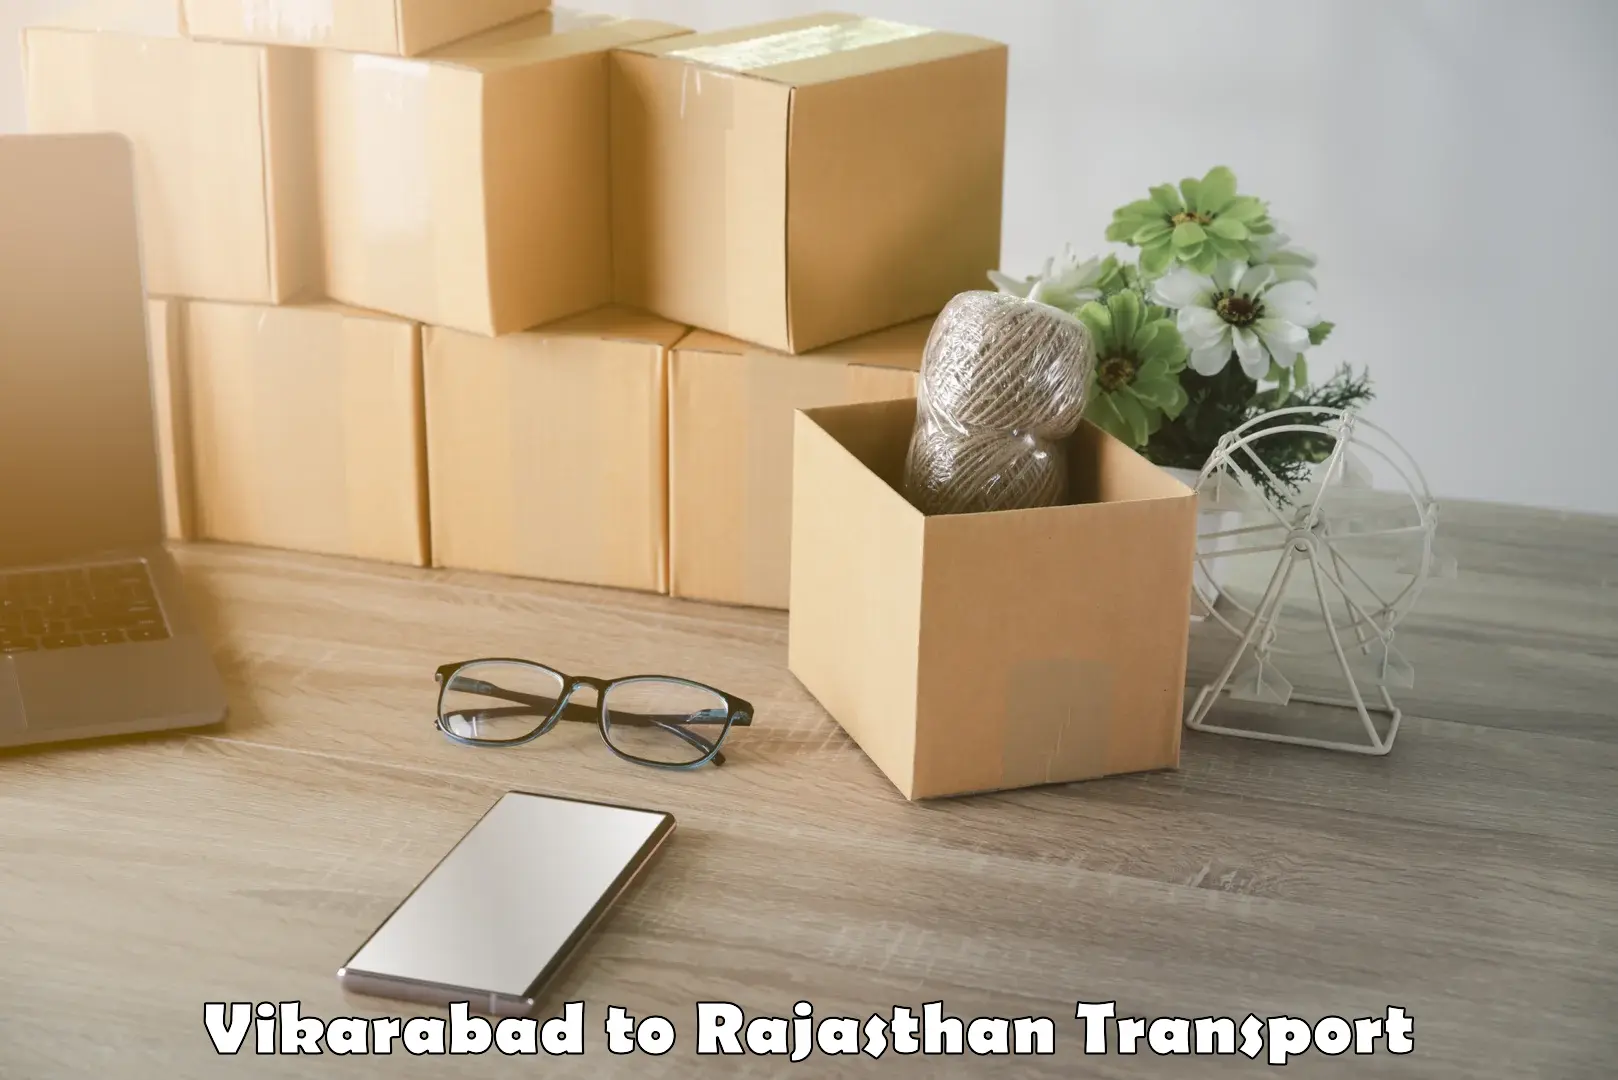 International cargo transportation services Vikarabad to Parbatsar